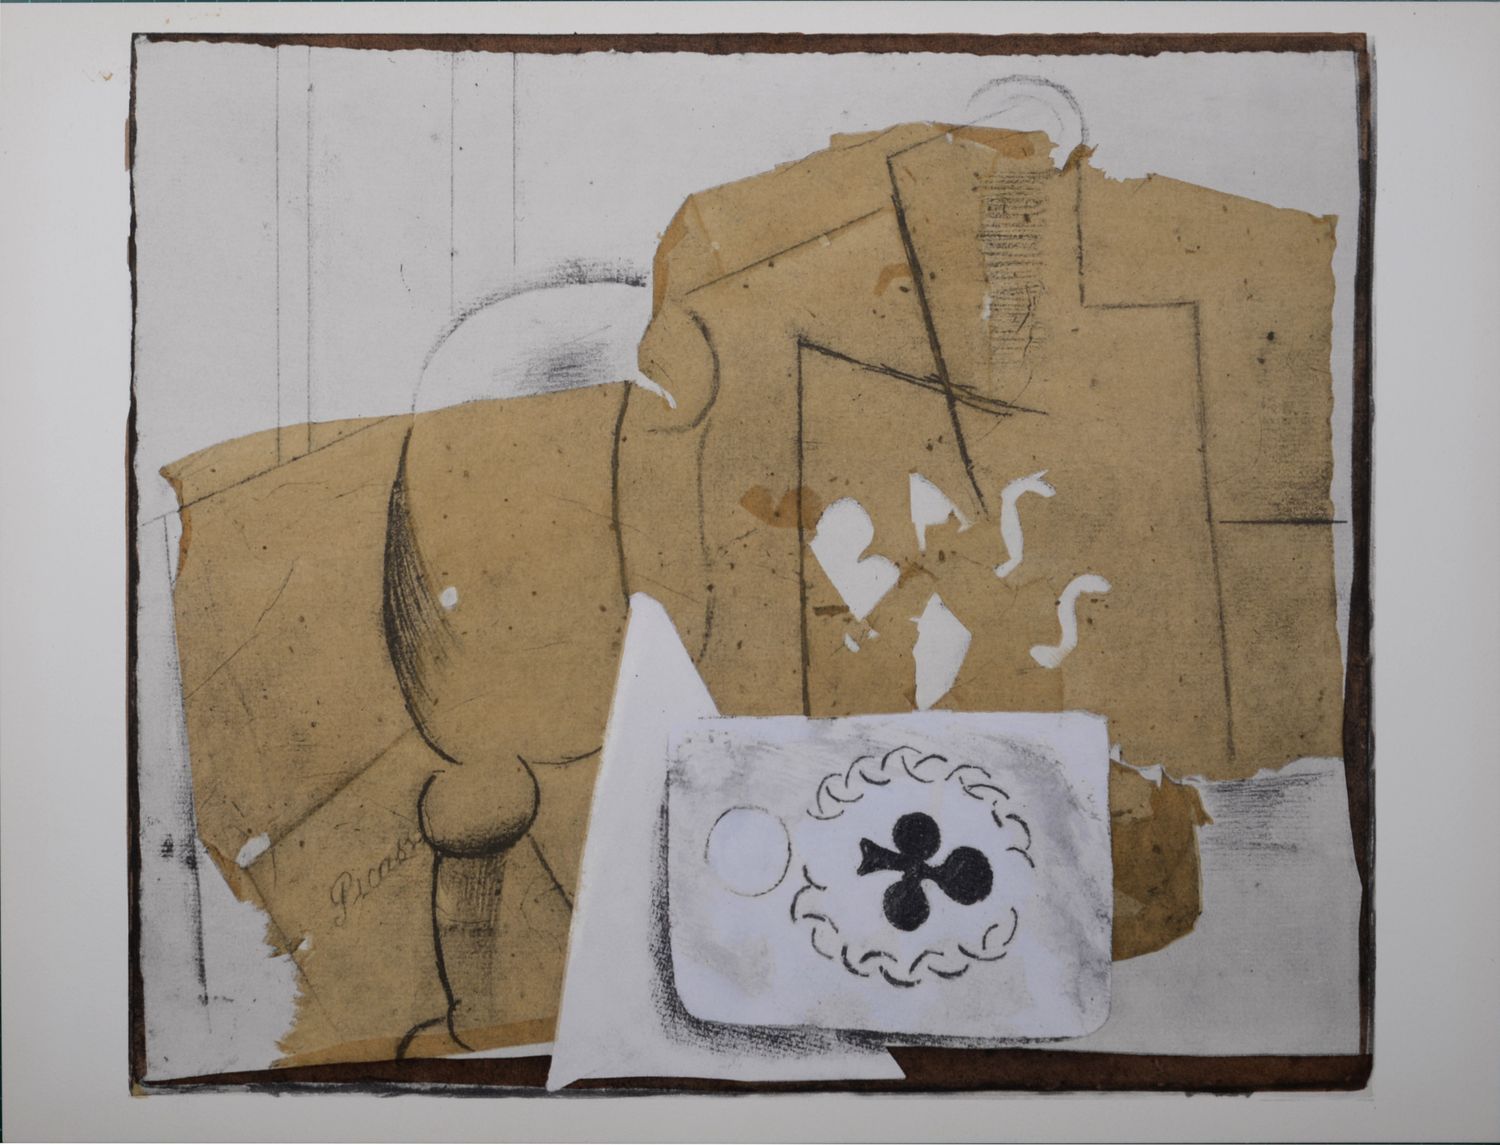 Pablo PICASSO Picasso (dopo)

Bottiglia, vetro e carte, 1962

Stencil (litografi&hellip;